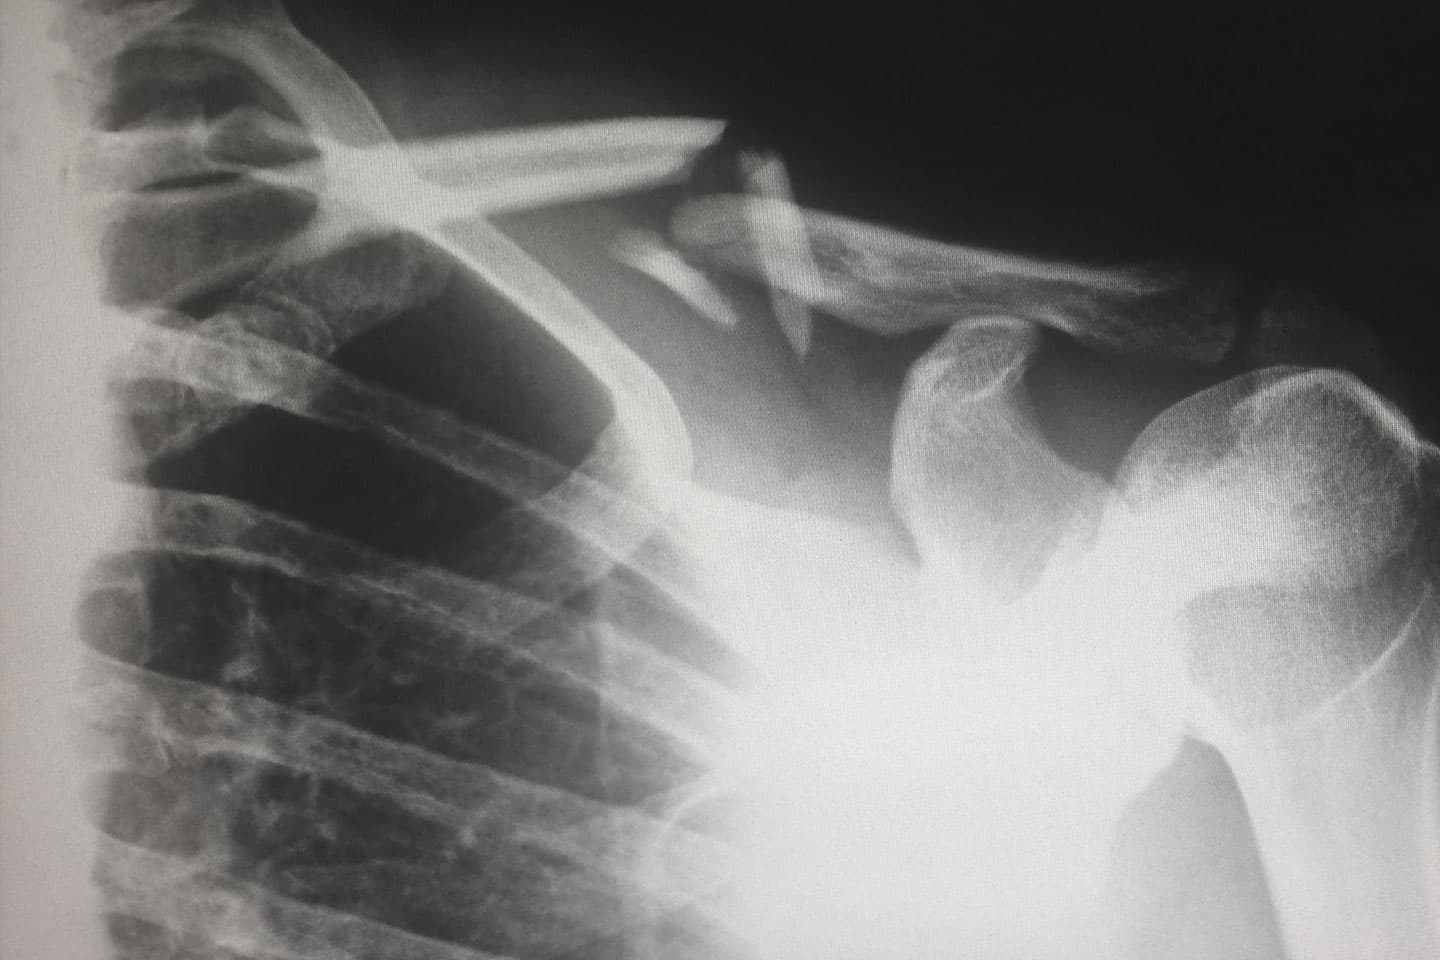 an x-ray of a broken shoulder bone